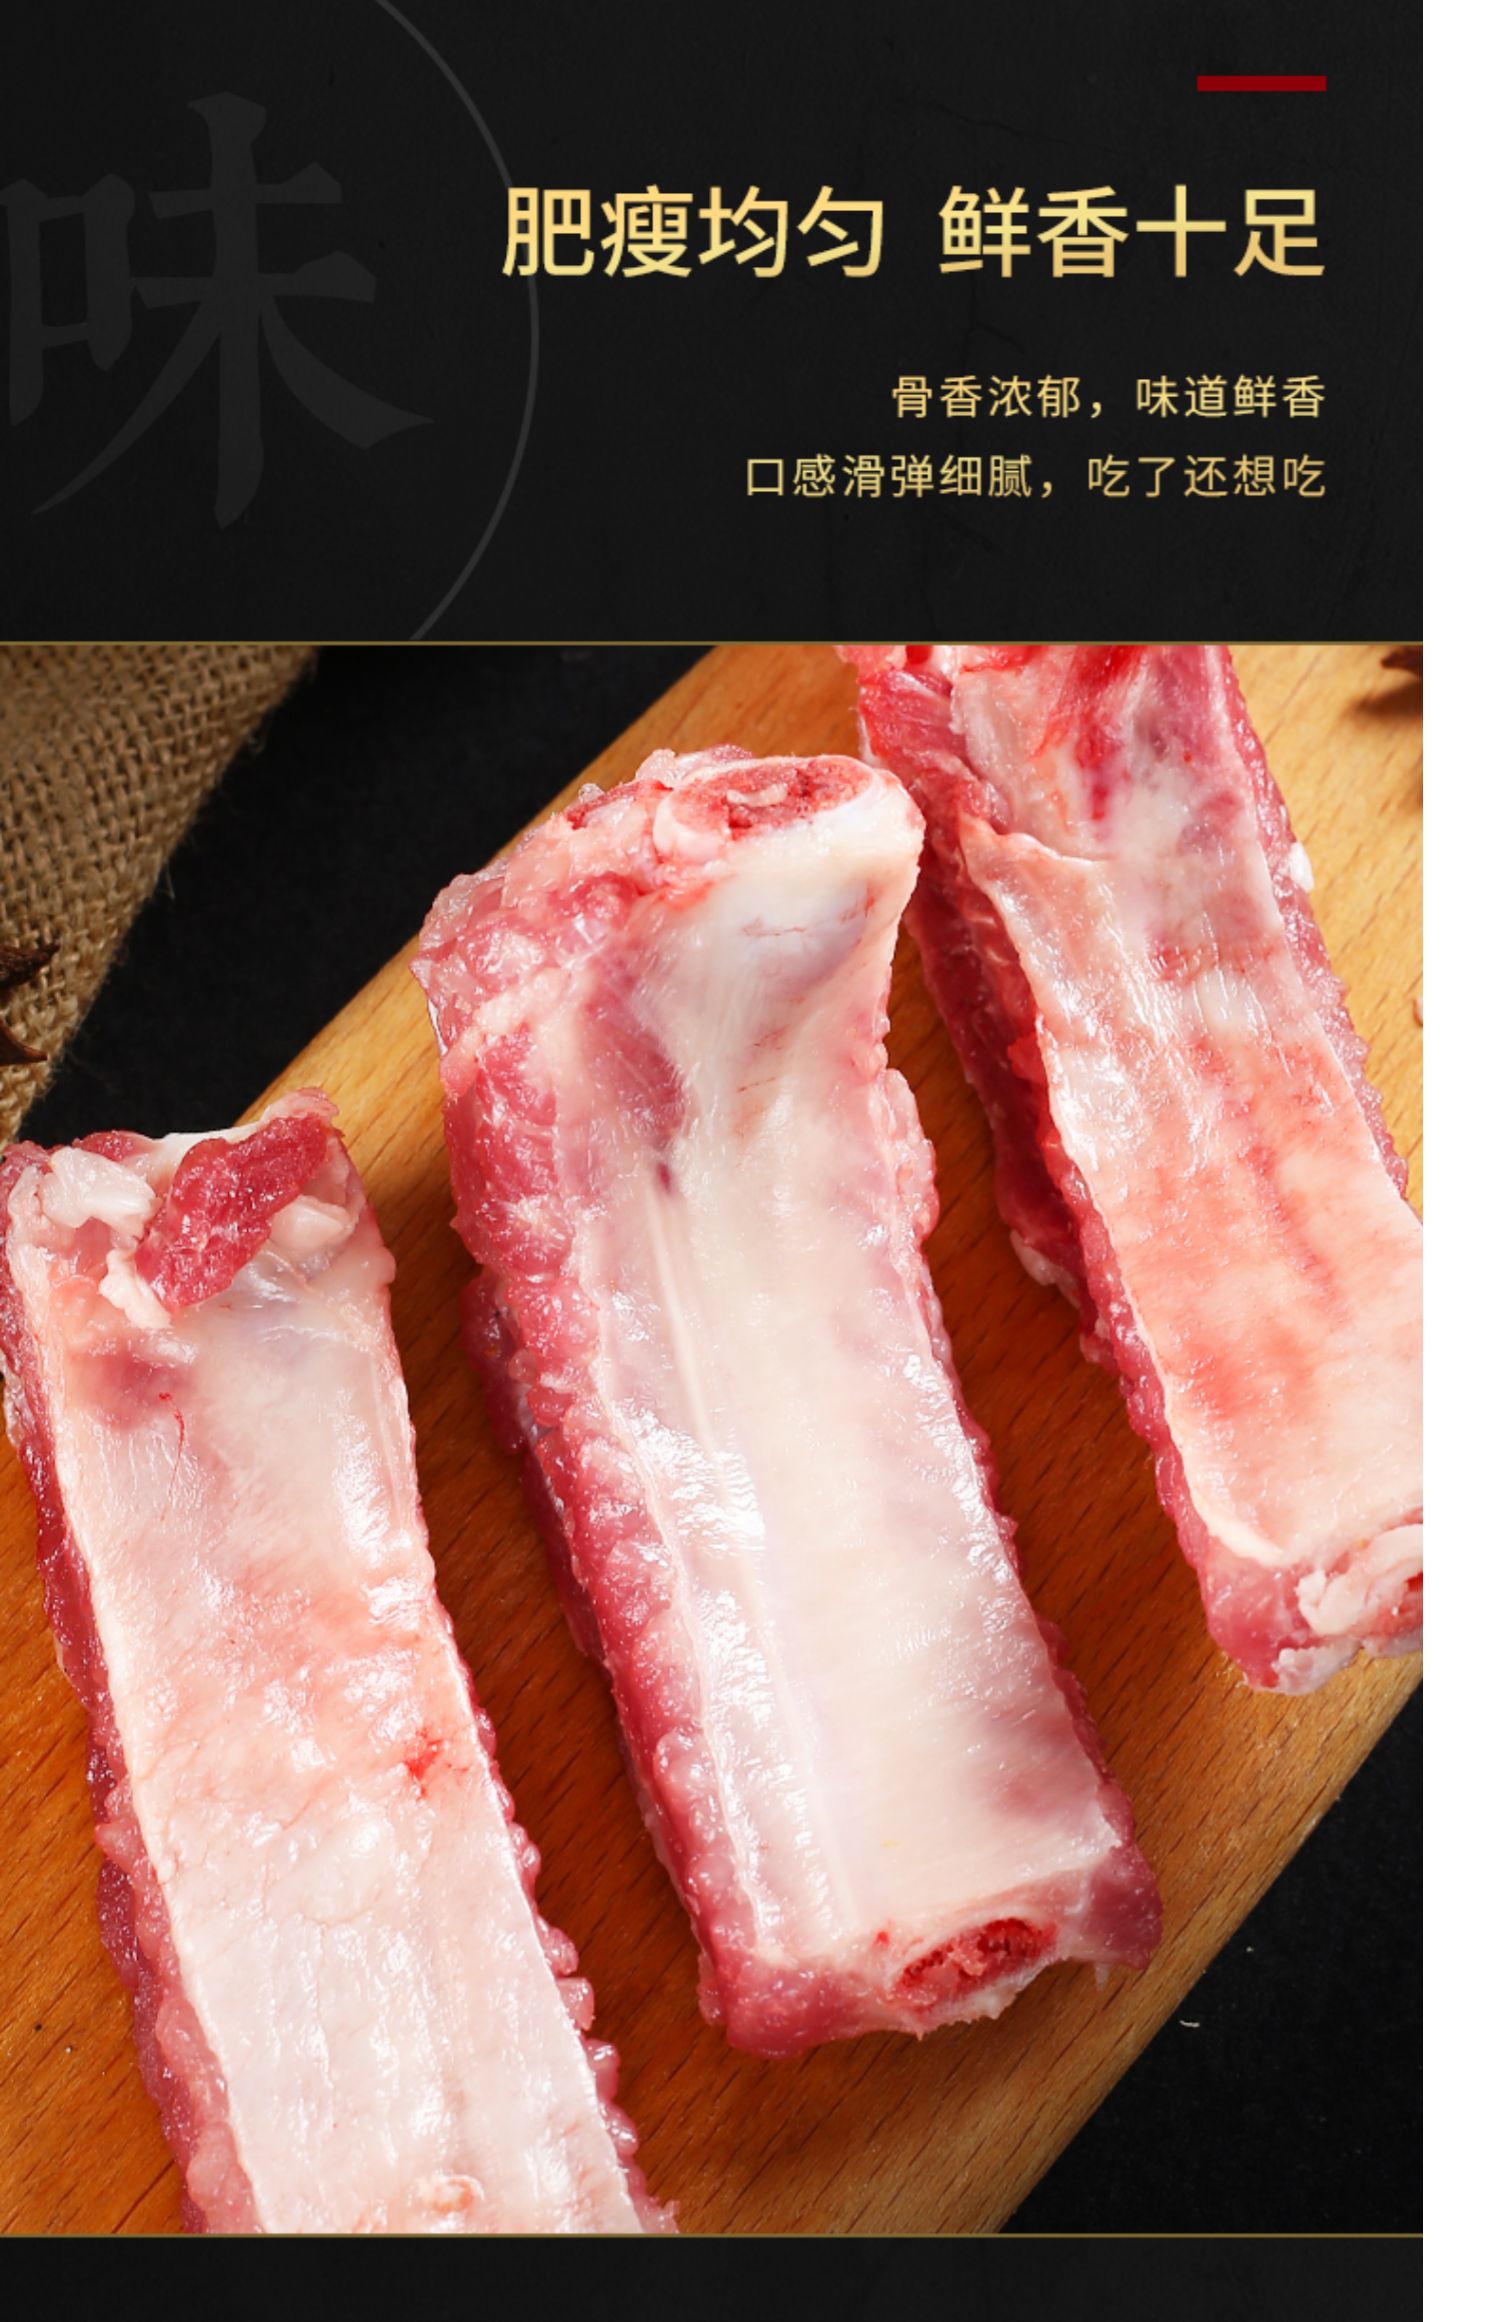 猪牛羊肉 猪肉 果鲜岛 国产猪肋排4斤新鲜冷冻农家土猪排骨猪肉生鲜